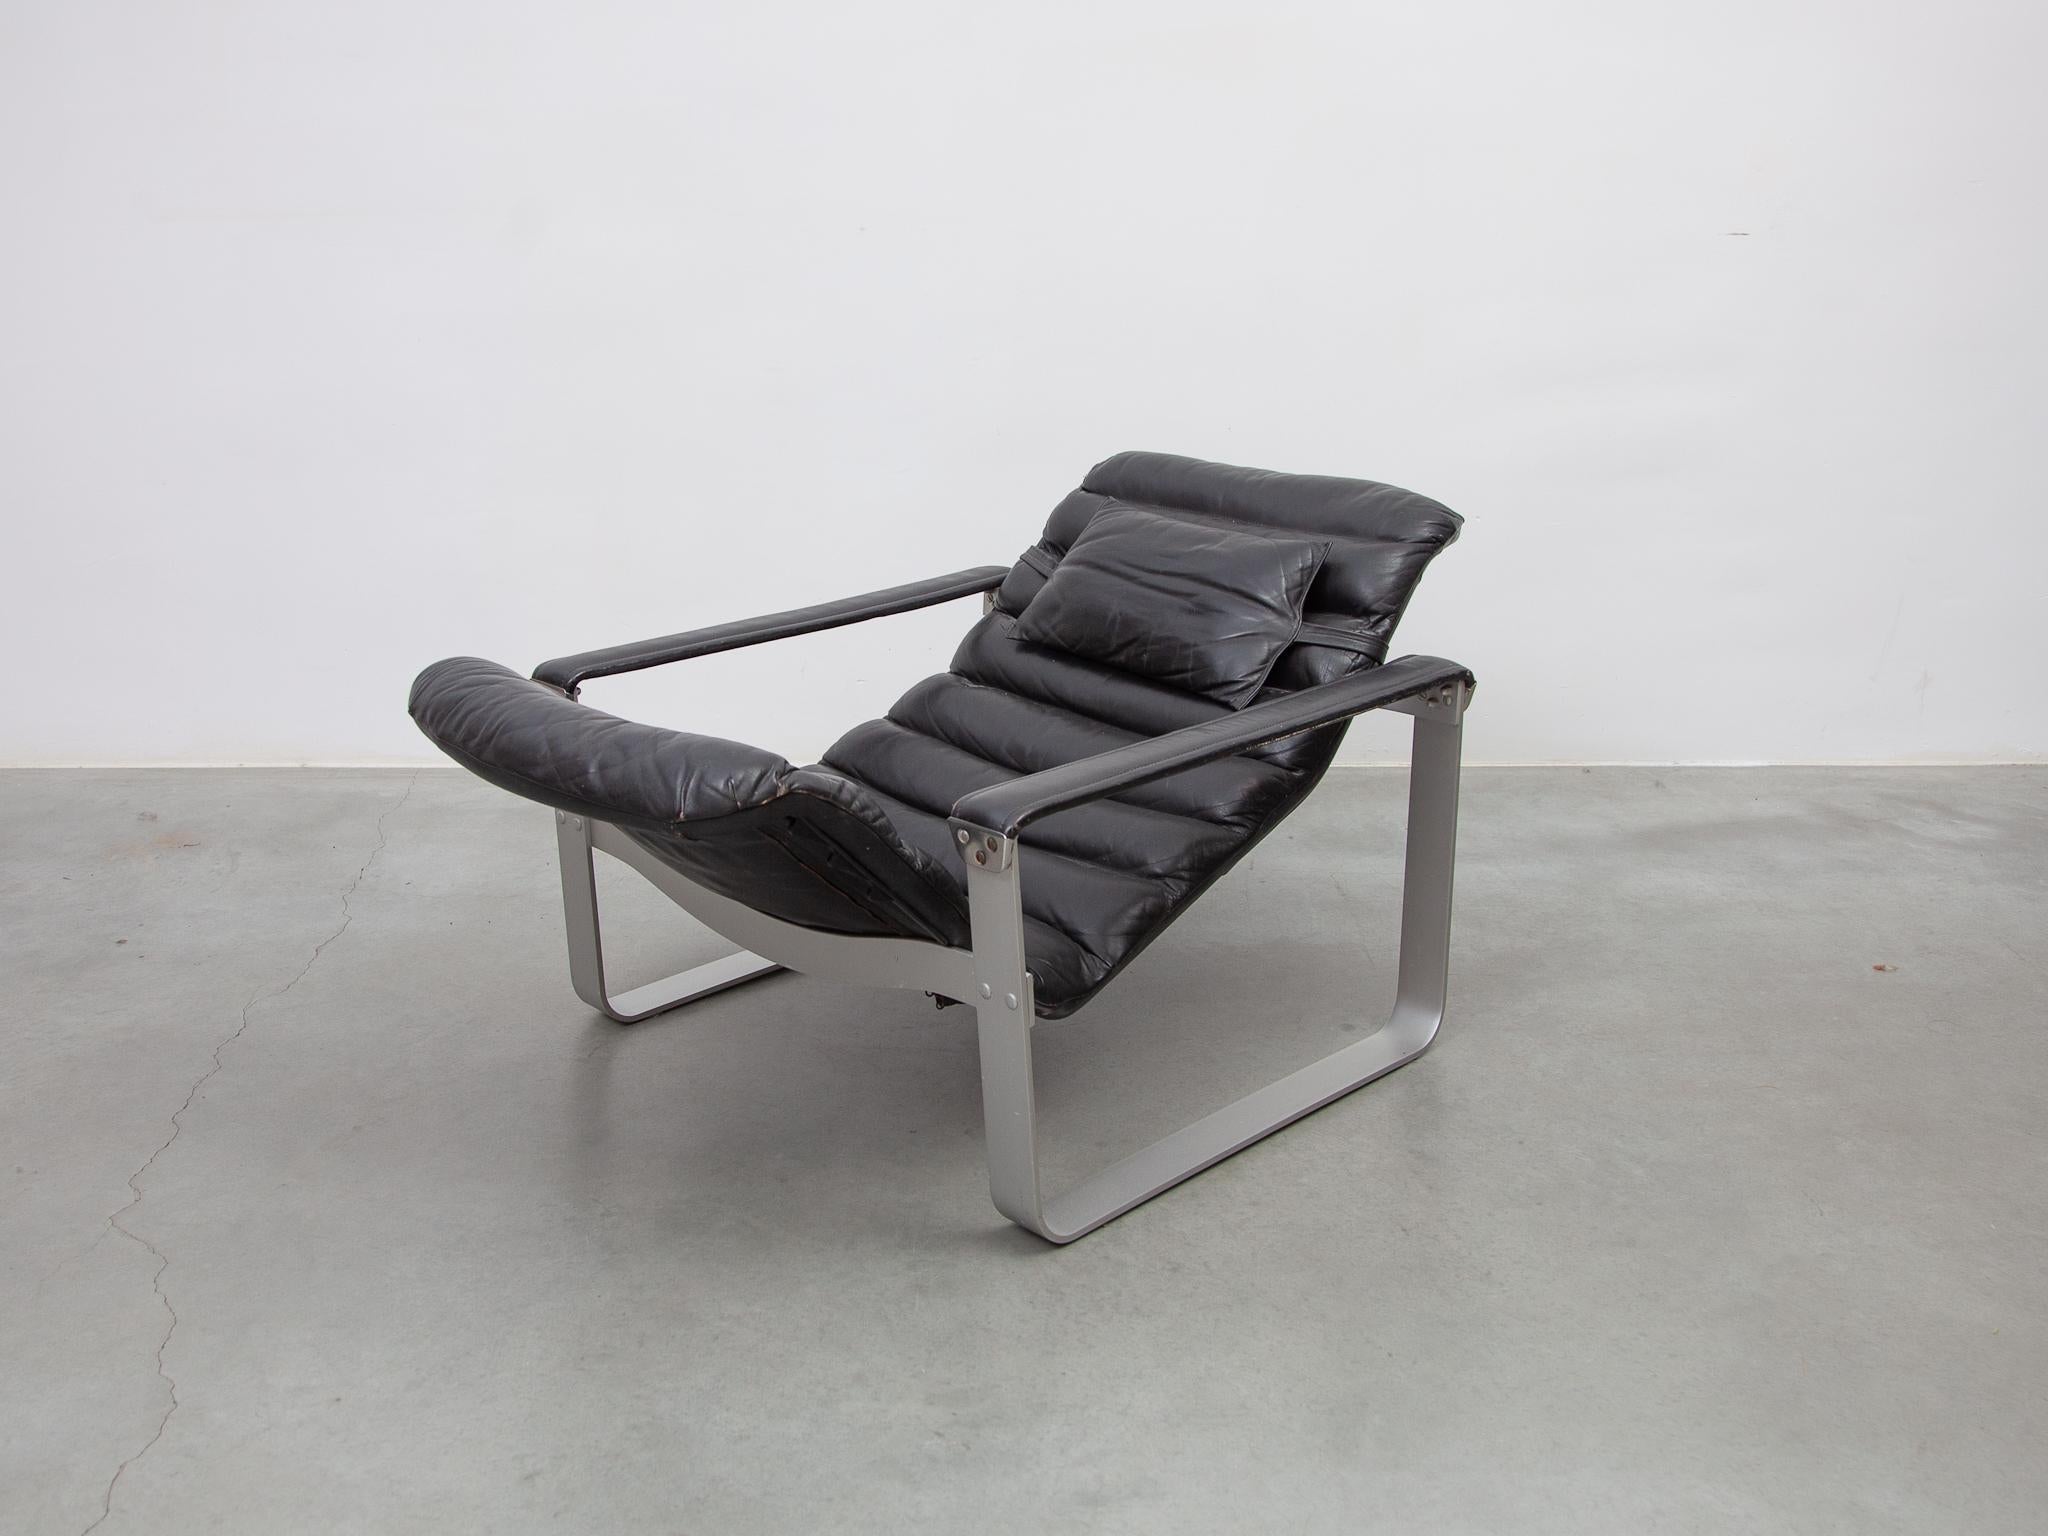 Bequemer Loungesessel, entworfen von Ilmari Lappalainen für Asko in den 1960er Jahren. Der Loungesessel hat ein Aluminiumgestell und ist mit schwarzem Farbverlaufsleder gepolstert. Die Sitze sind in drei Stufen verstellbar und sehr bequem. Label